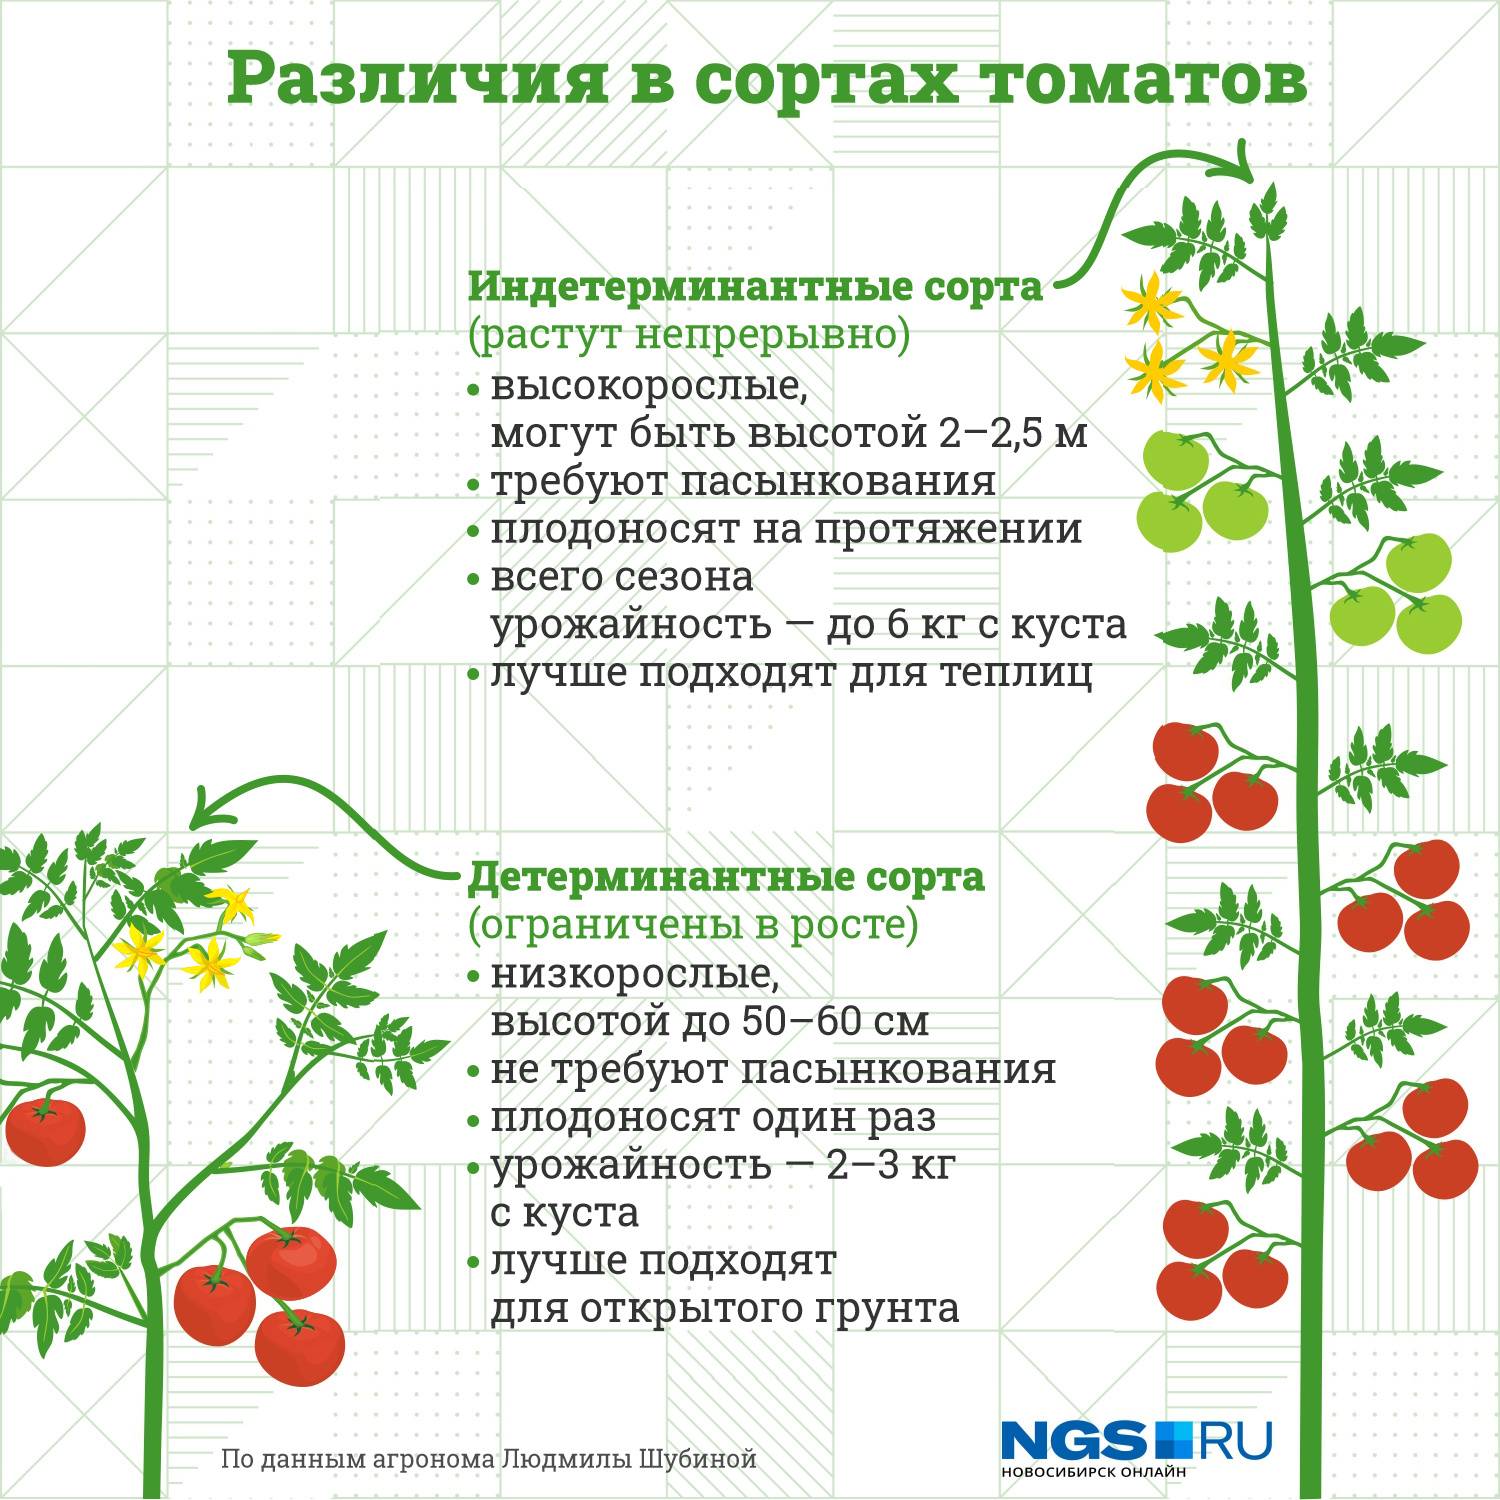 Сибирский сад помидоры: обзор сортов с описанием и фото